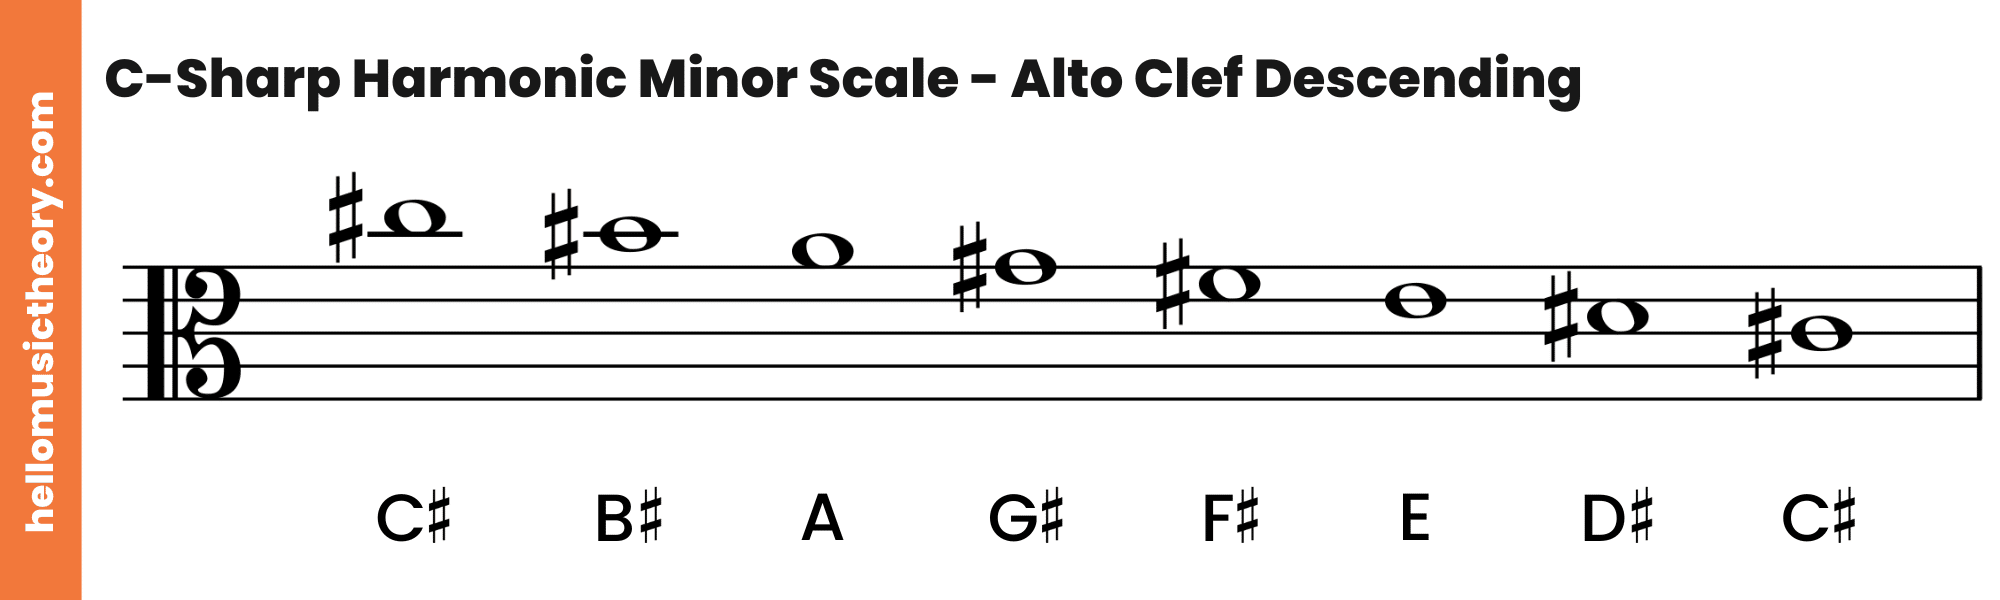 C-Sharp Harmonic Minor Scale Alto Clef Descending